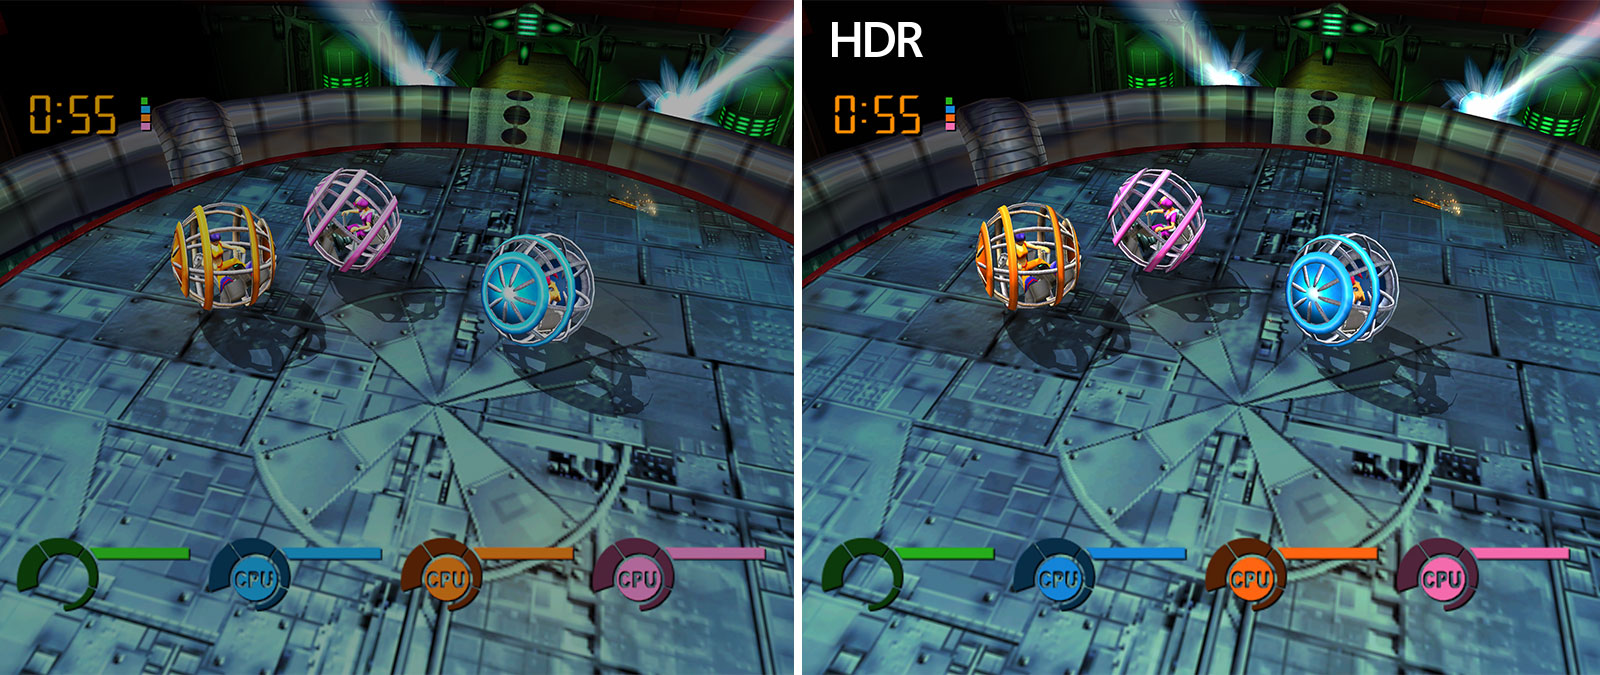 Fusion Frenzyn vertailunäyttökuvia, joista yksi on kirkkaampi Auto HDR:n ansiosta